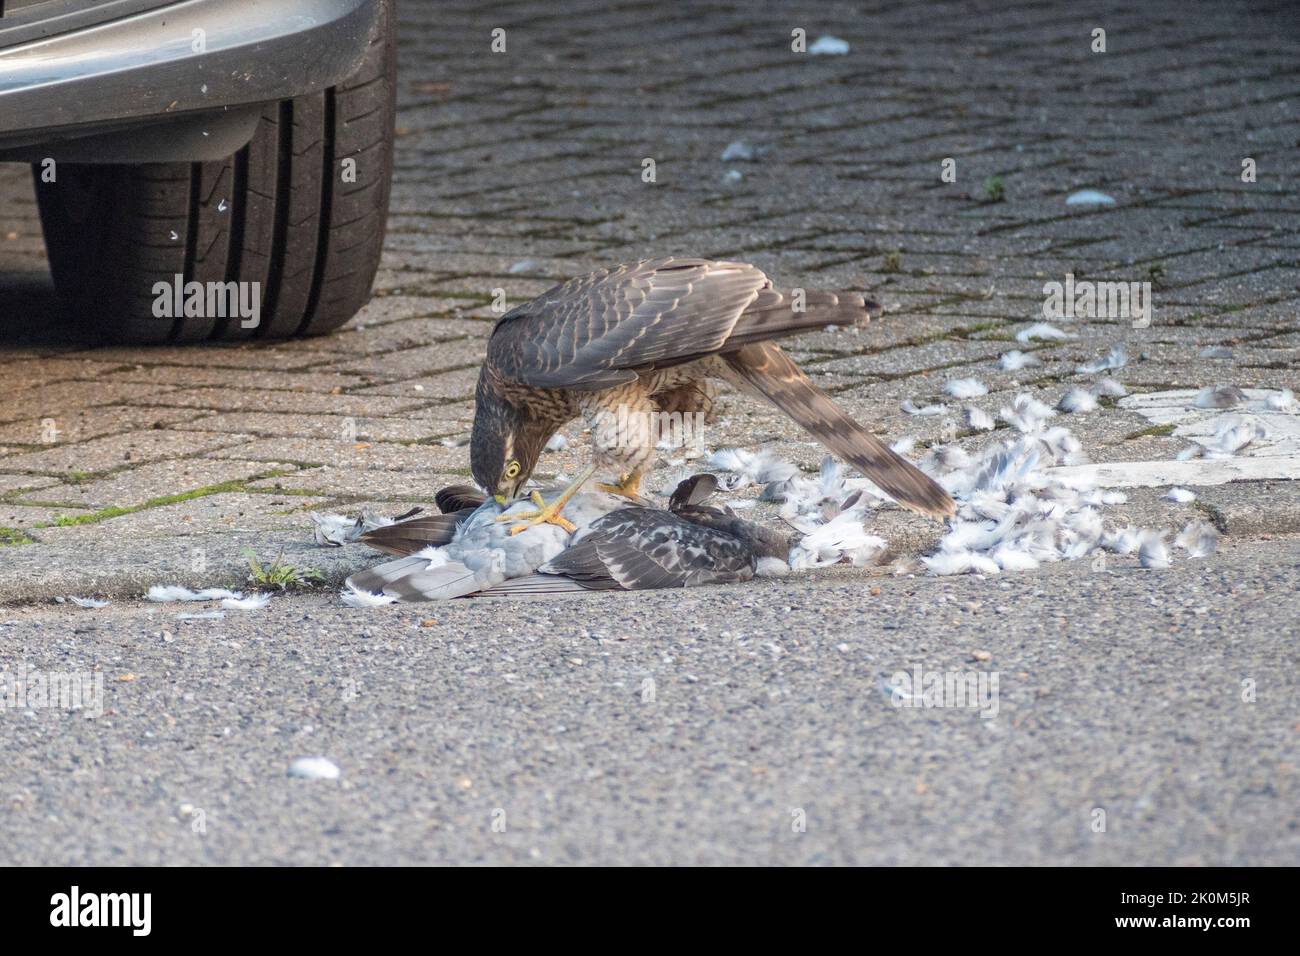 Nahaufnahme eines eurasischen Sparrowhawks (Accipiter nisus), der sich in einer städtischen Umgebung, Großbritannien, an einer toten Taube ernährt. Stockfoto